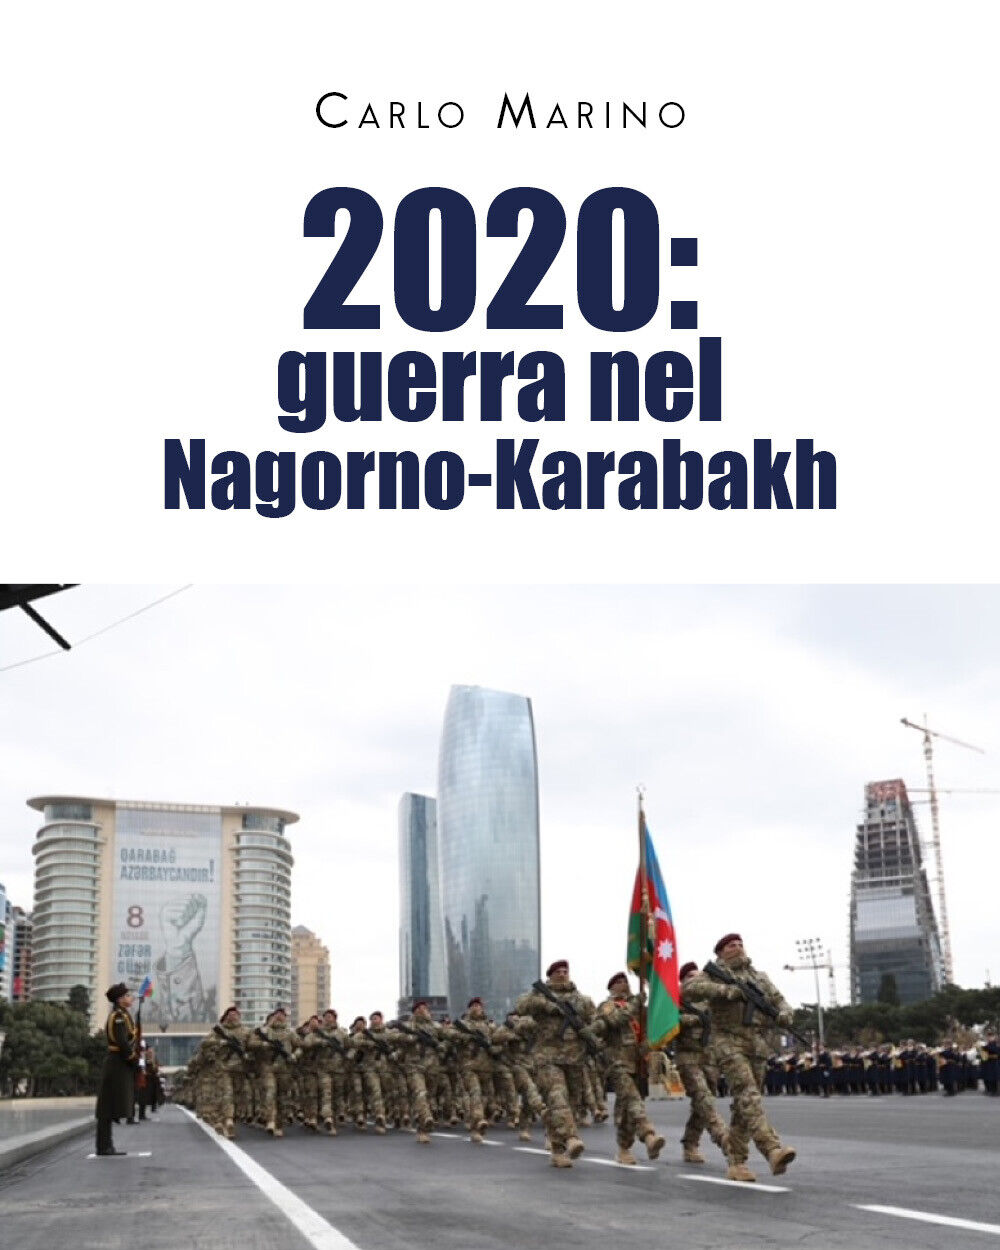 2020: guerra nel Nagorno-Karabakh di Carlo Marino, 2021, Youcanprint